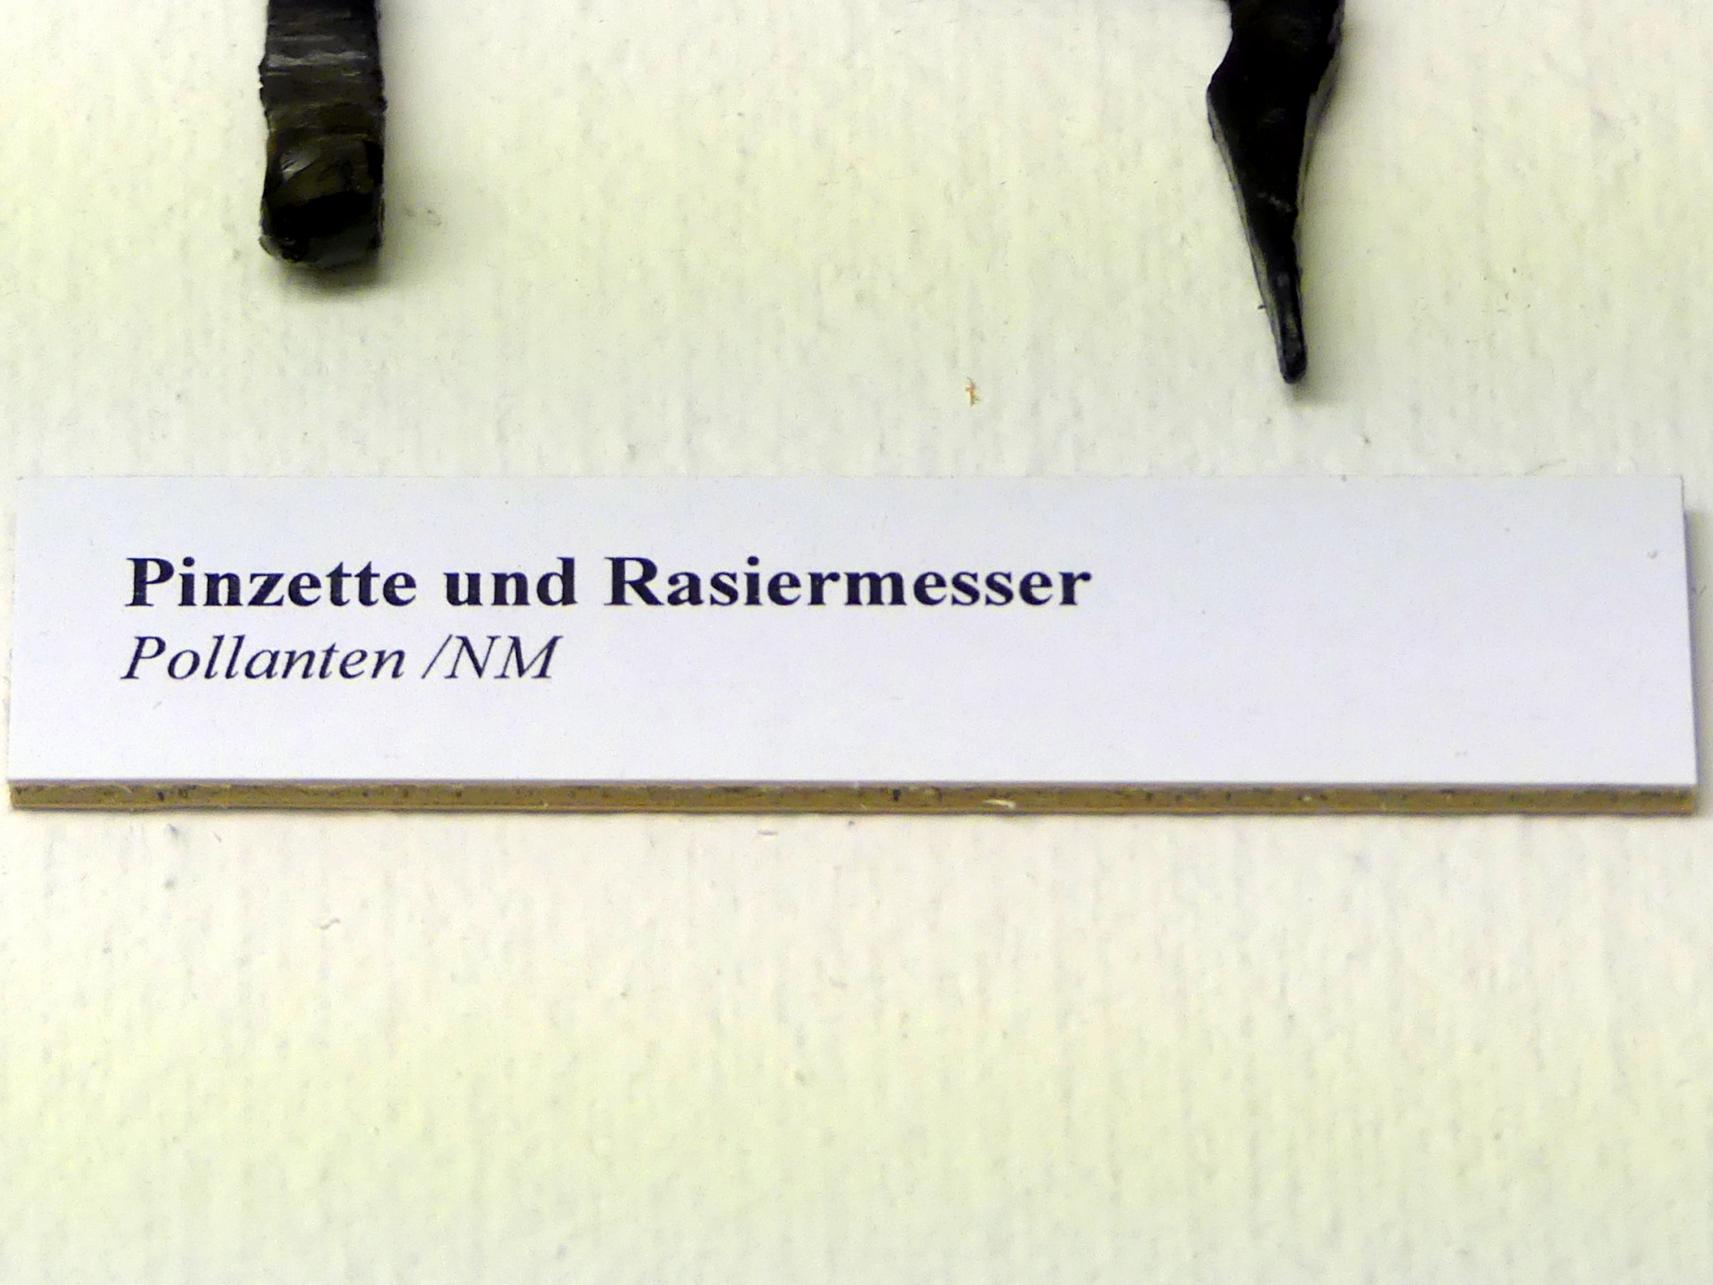 Rasiermesser, Spätlatènezeit D, 700 - 100 v. Chr., Bild 2/2